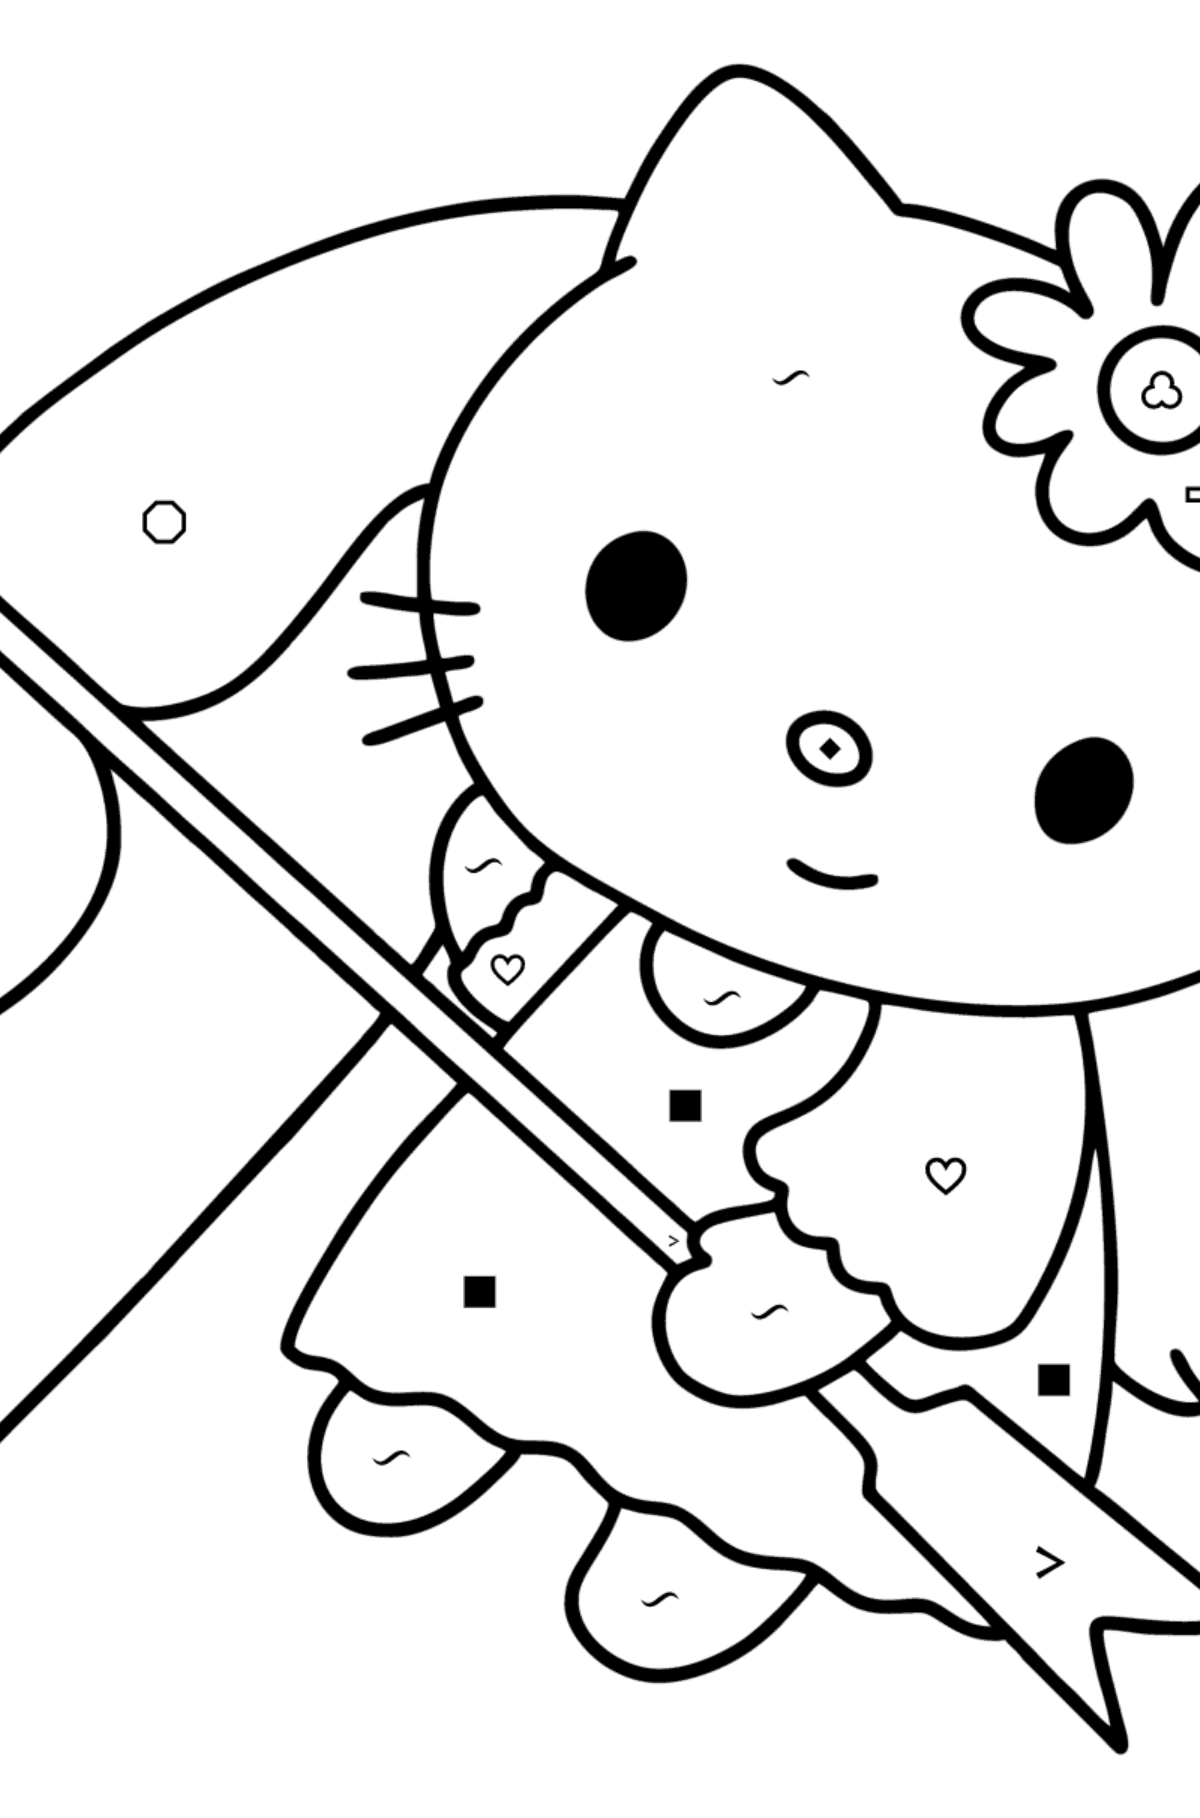 Boyama sayfası Hello Kitty Sevgililer Günü - Sembollere ve Geometrik Şekillerle Boyama çocuklar için